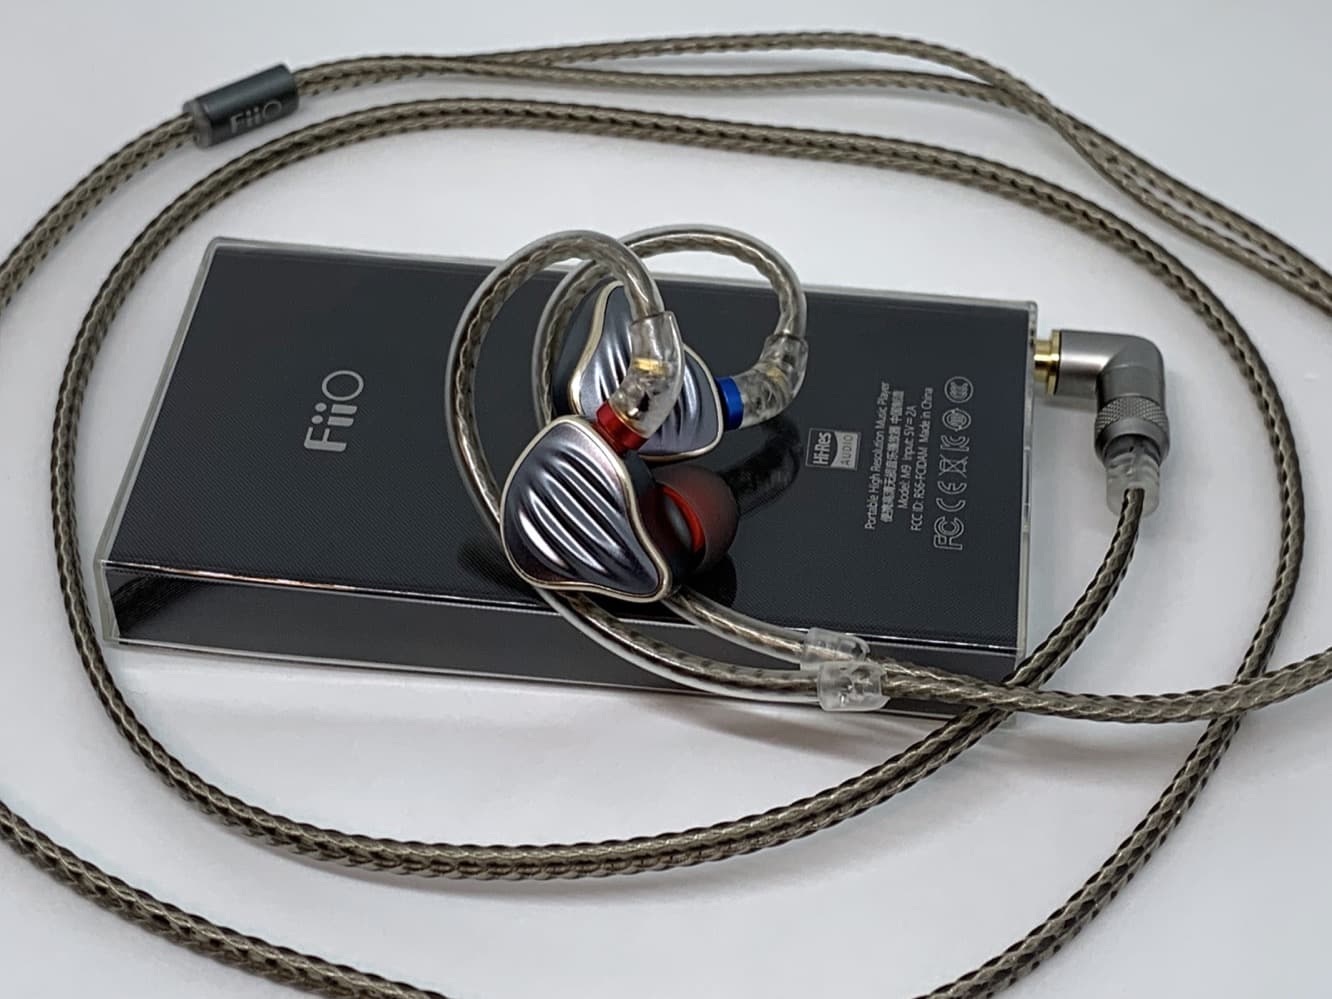 İnceleme: Fiio M9 Taşınabilir Yüksek Çözünürlüklü Ses Oynatıcı